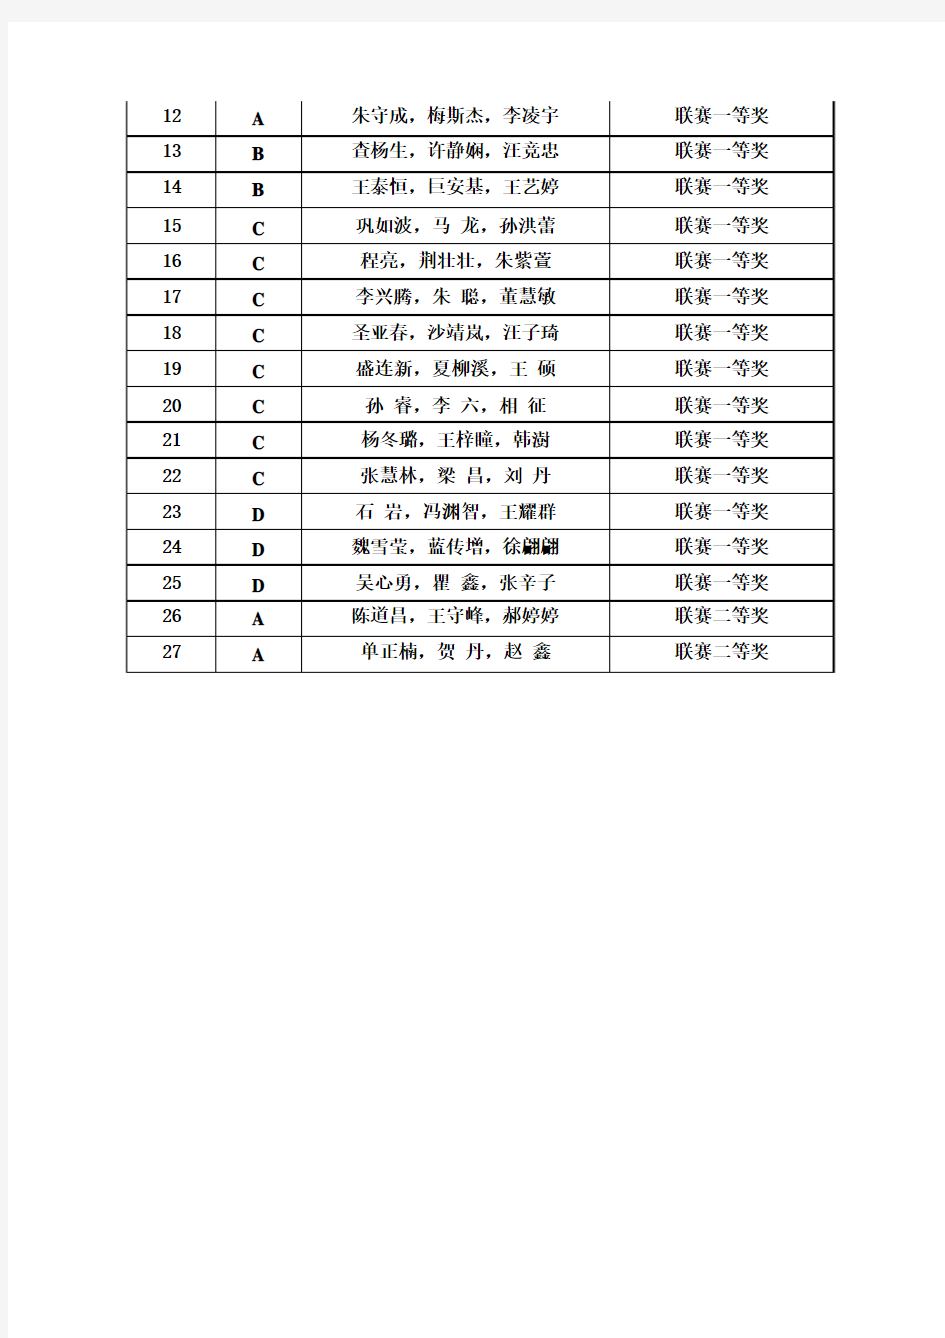 2015 年东北三省数学建模联赛获奖名单